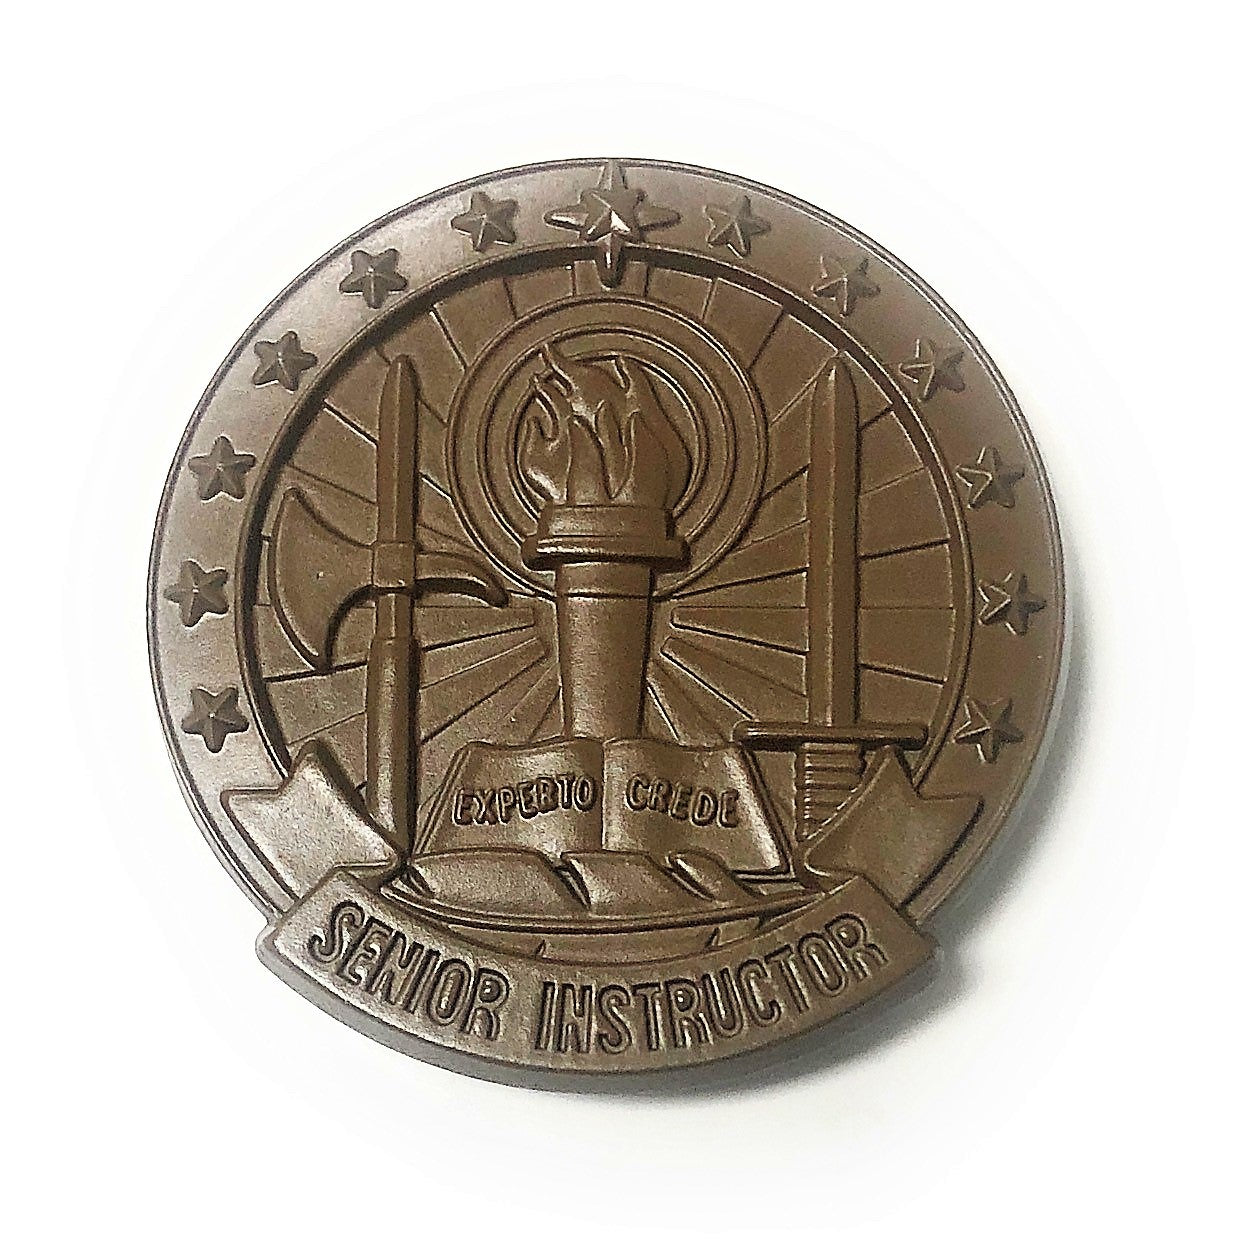 U.S. Army Instructor senior badge sub blk (BROWN)